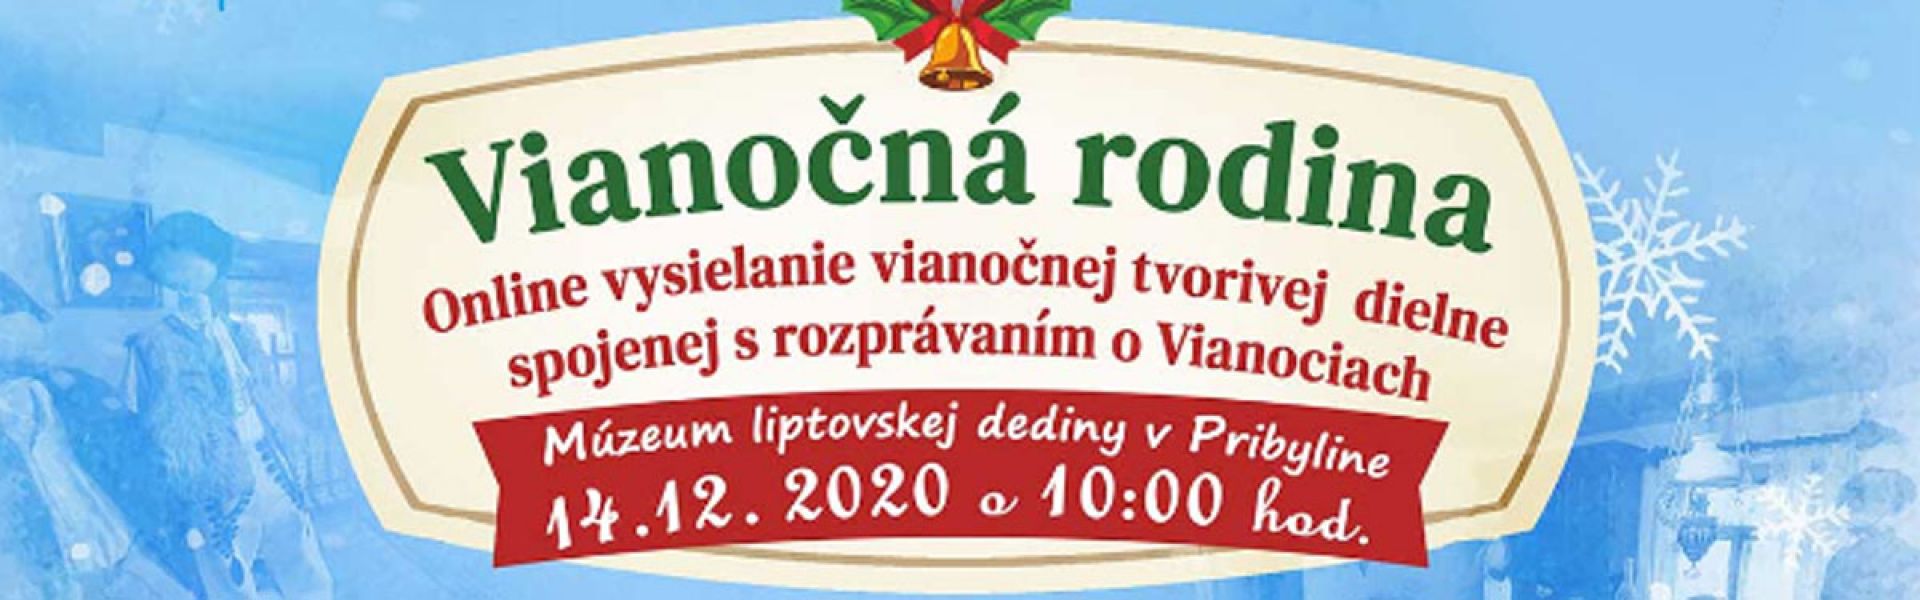 Záznam z Live vysielania: Vianočná rodina 14.12. 2020 Múzeum liptovskej dediny v Pribyline